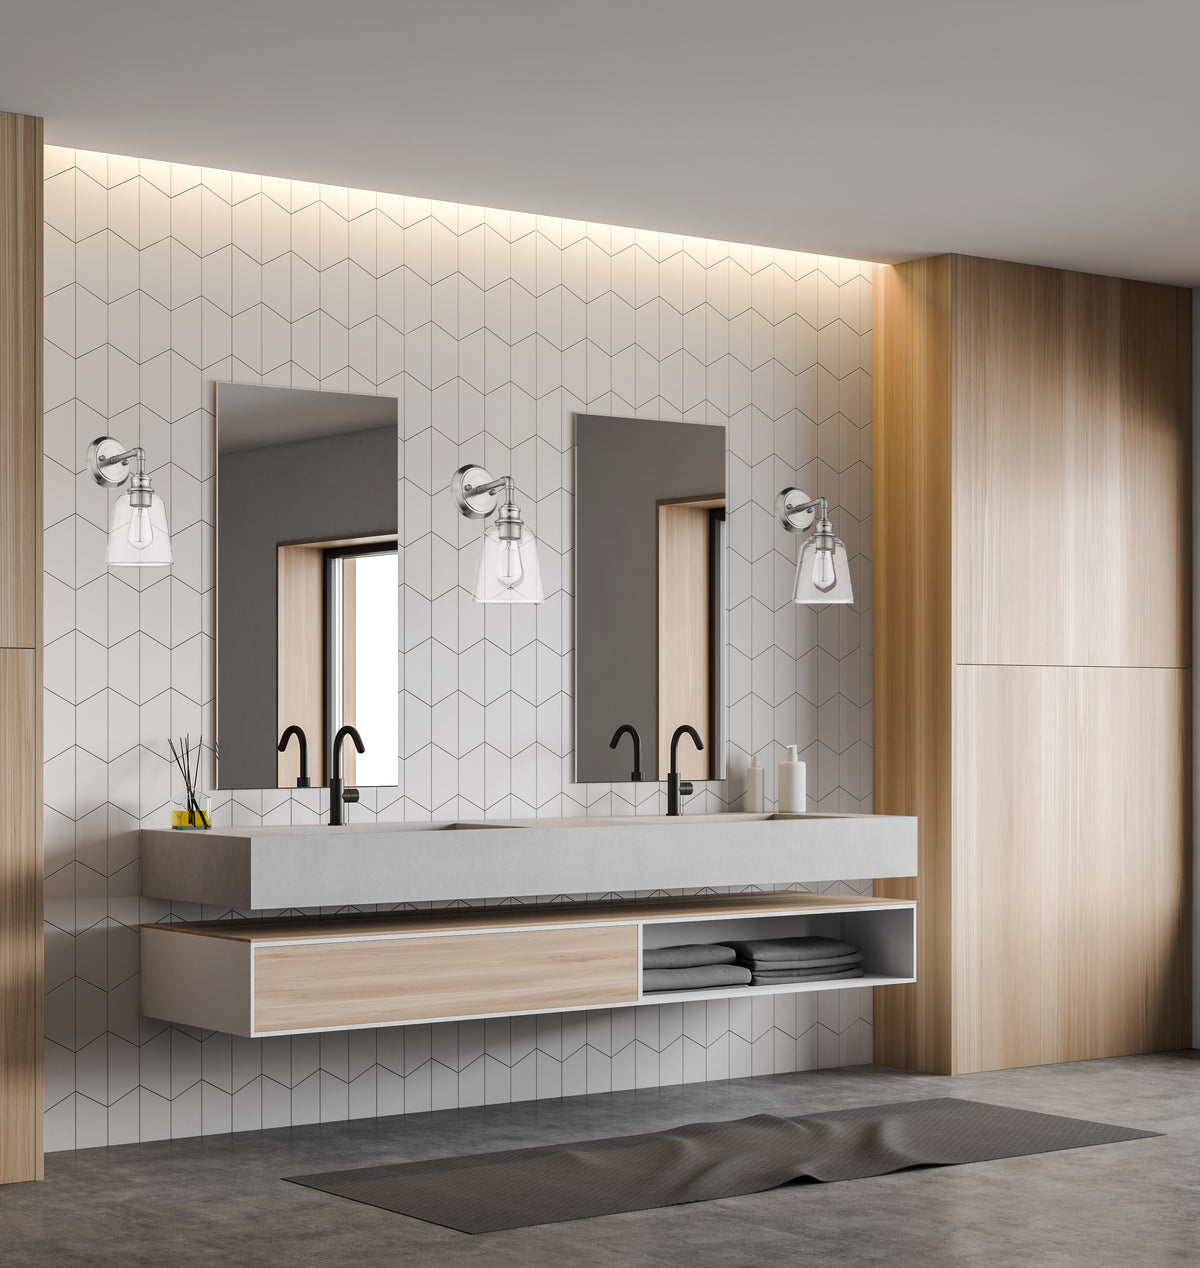 Nickel bathroom vanity light fixtures - Vivio Lighting